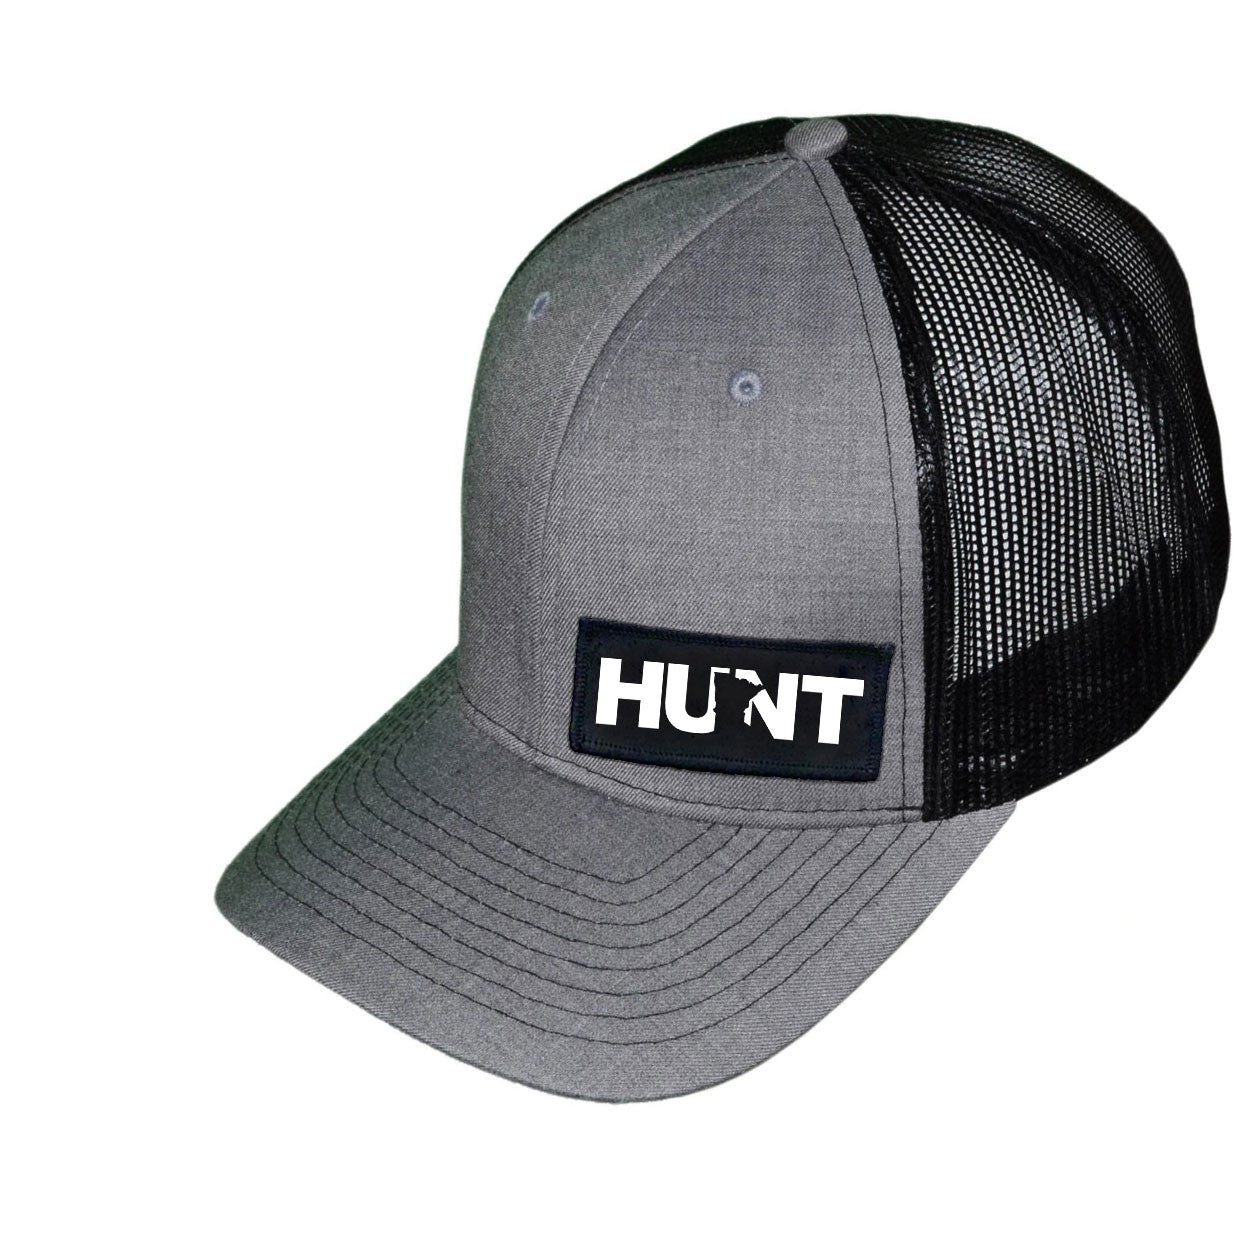 Hunt MN Snapback Trucker Hat Gray/Black